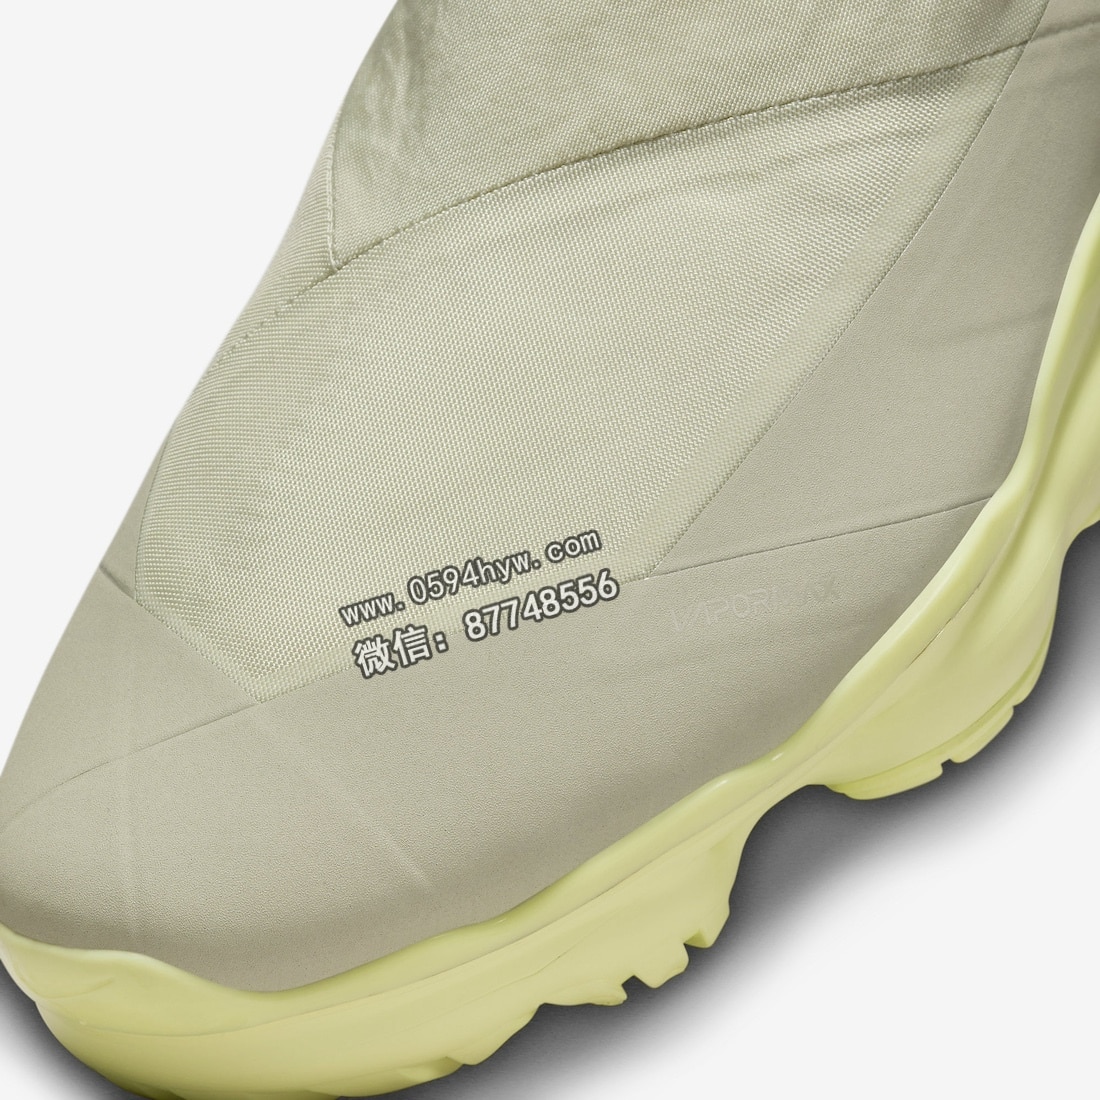 运动鞋, 耐克, Vapormax, ROA, RO, Nike VaporMax Moc Roam, Nike VaporMax - 耐克VaporMax Moc Roam “浅石”将于10月31日发布